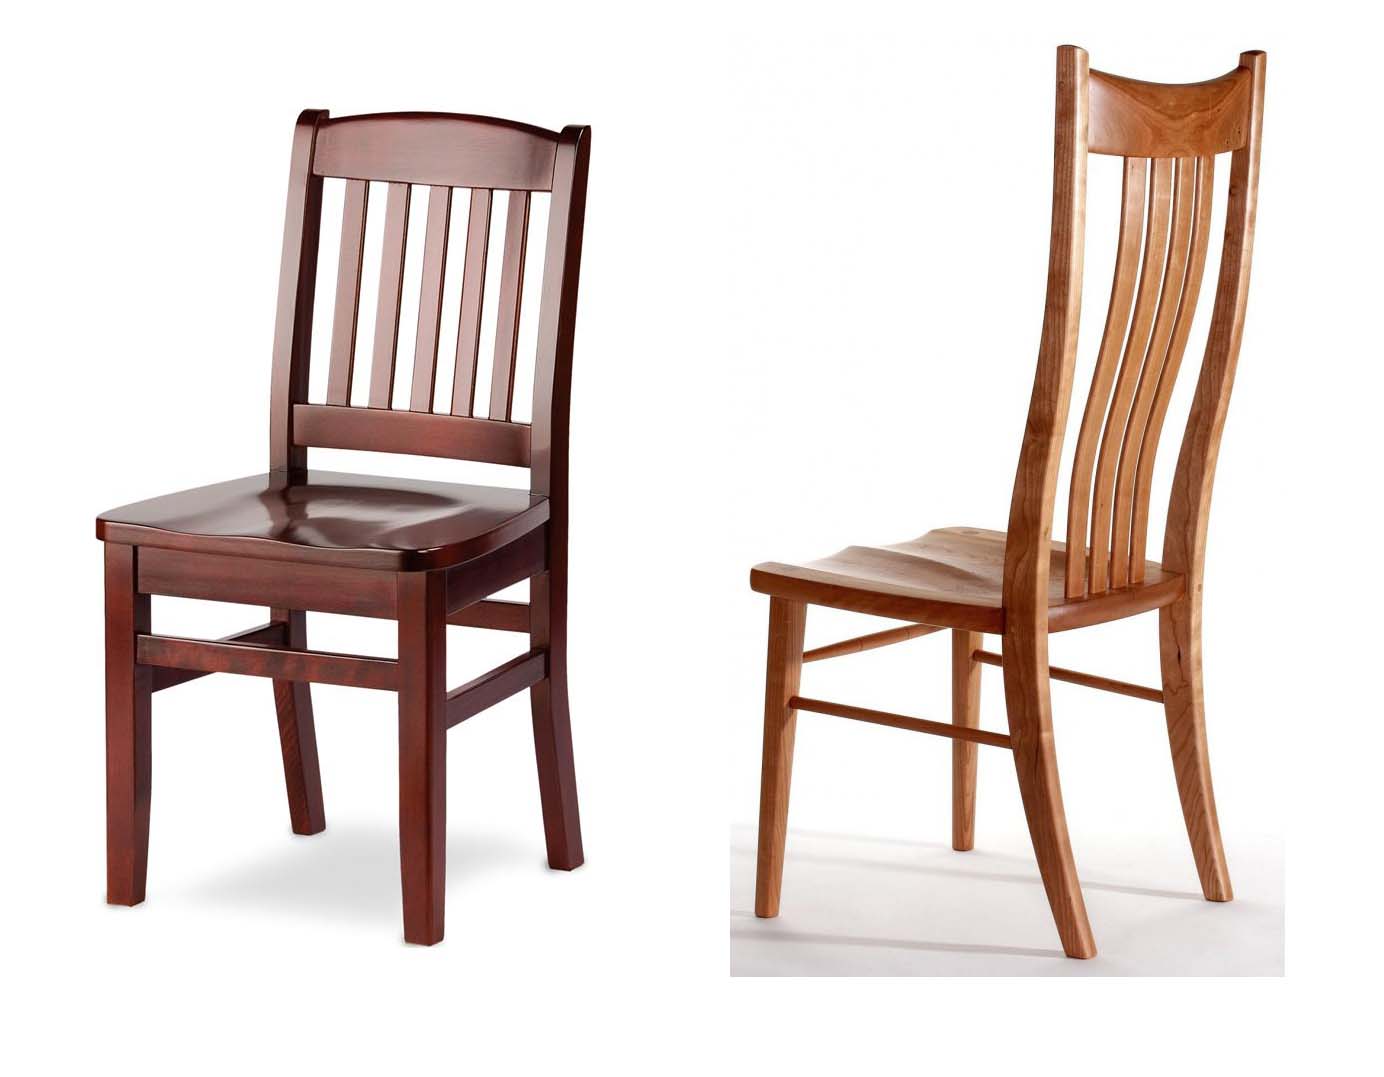 стул с деревянным сиденьем